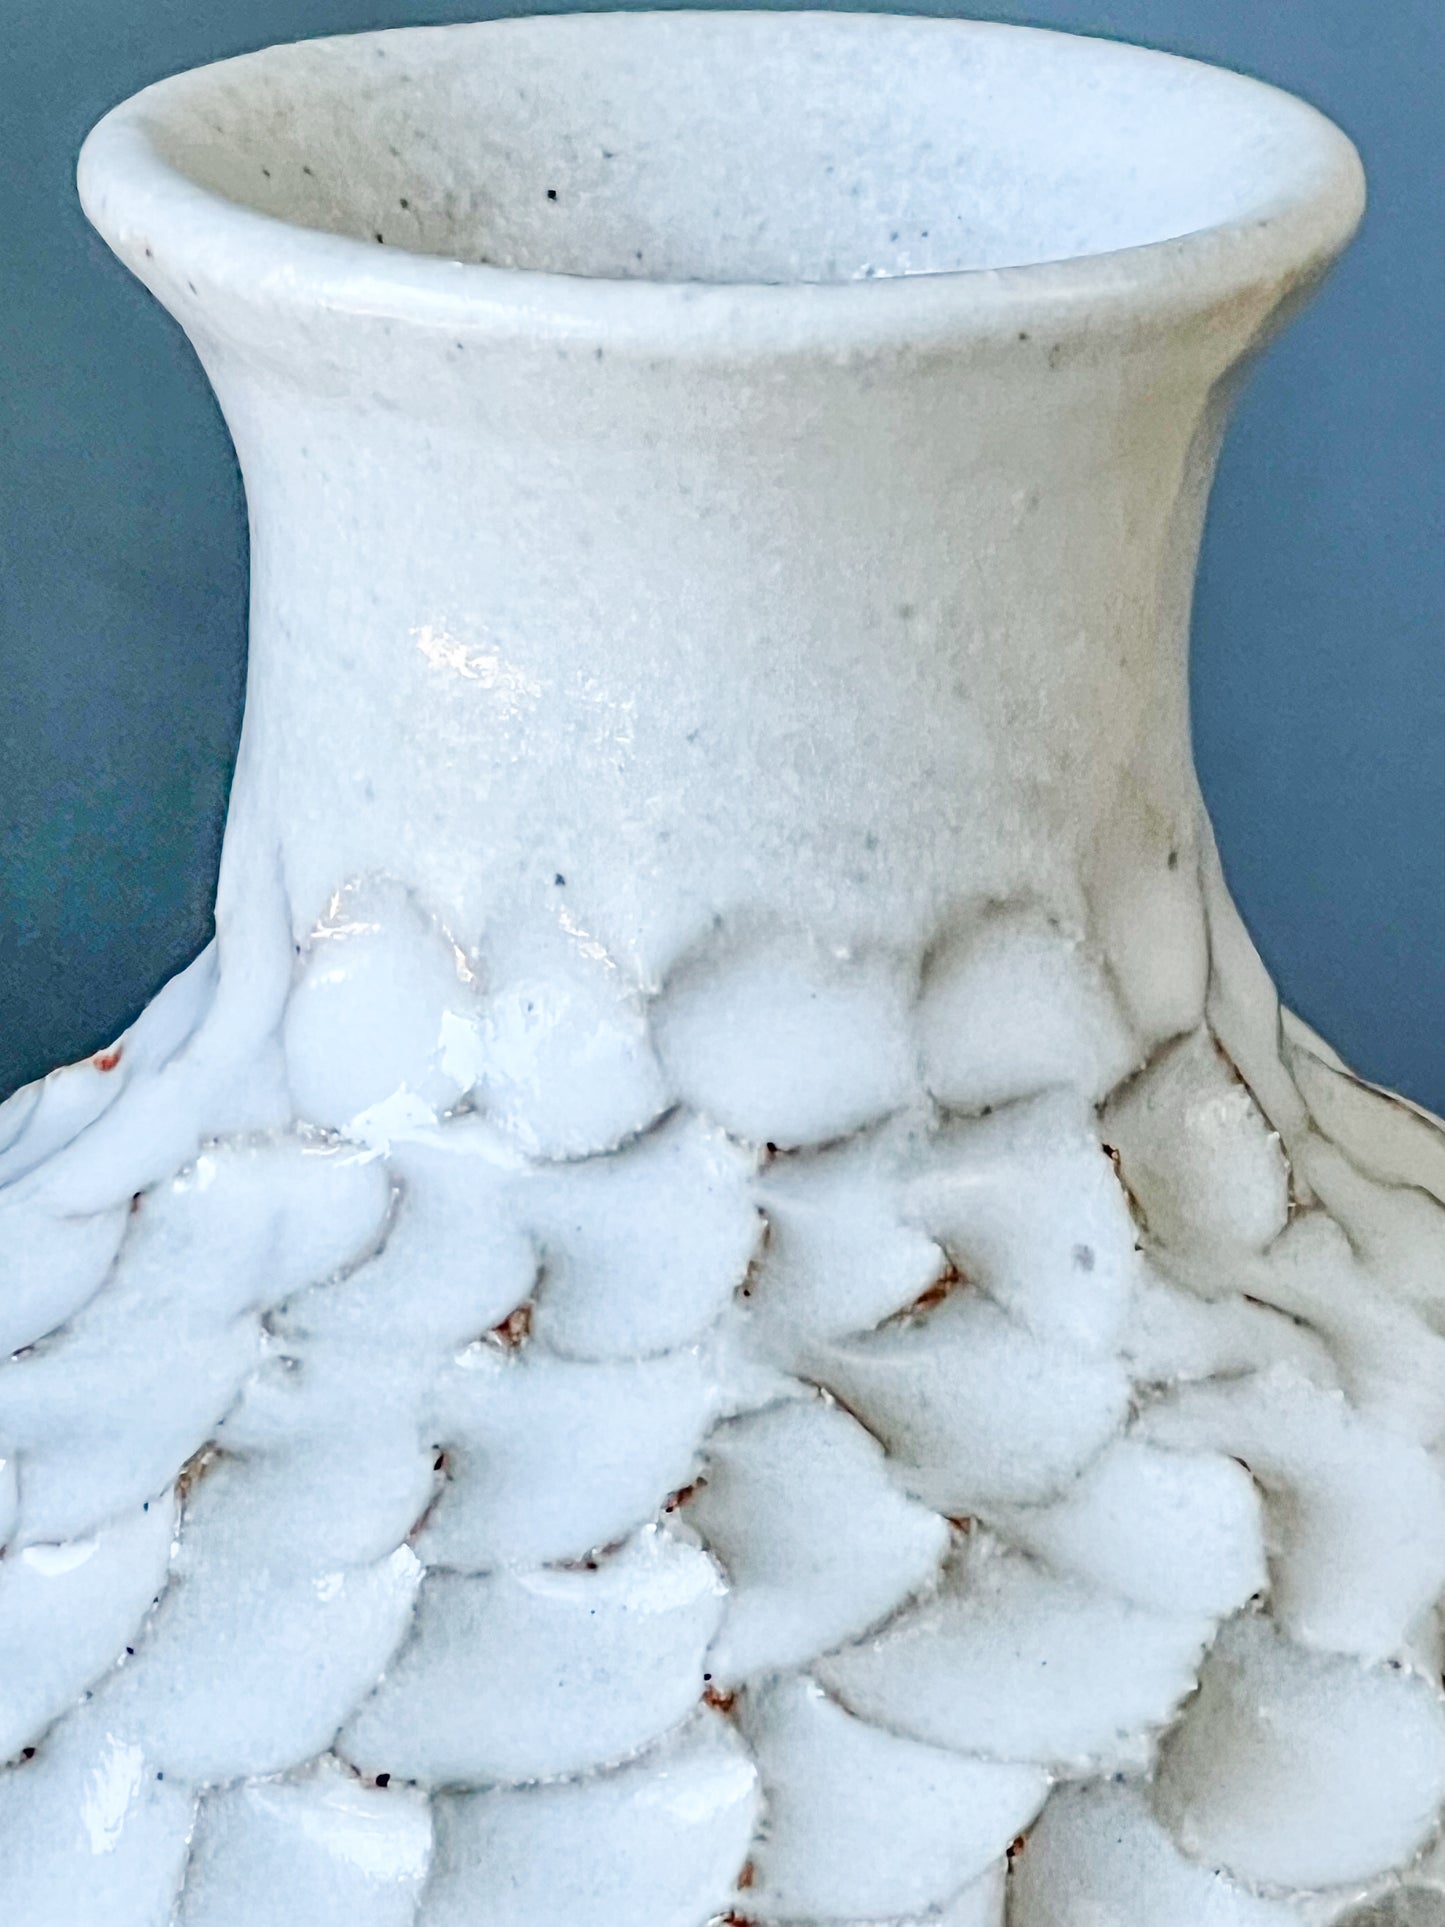 Round Textured Vase